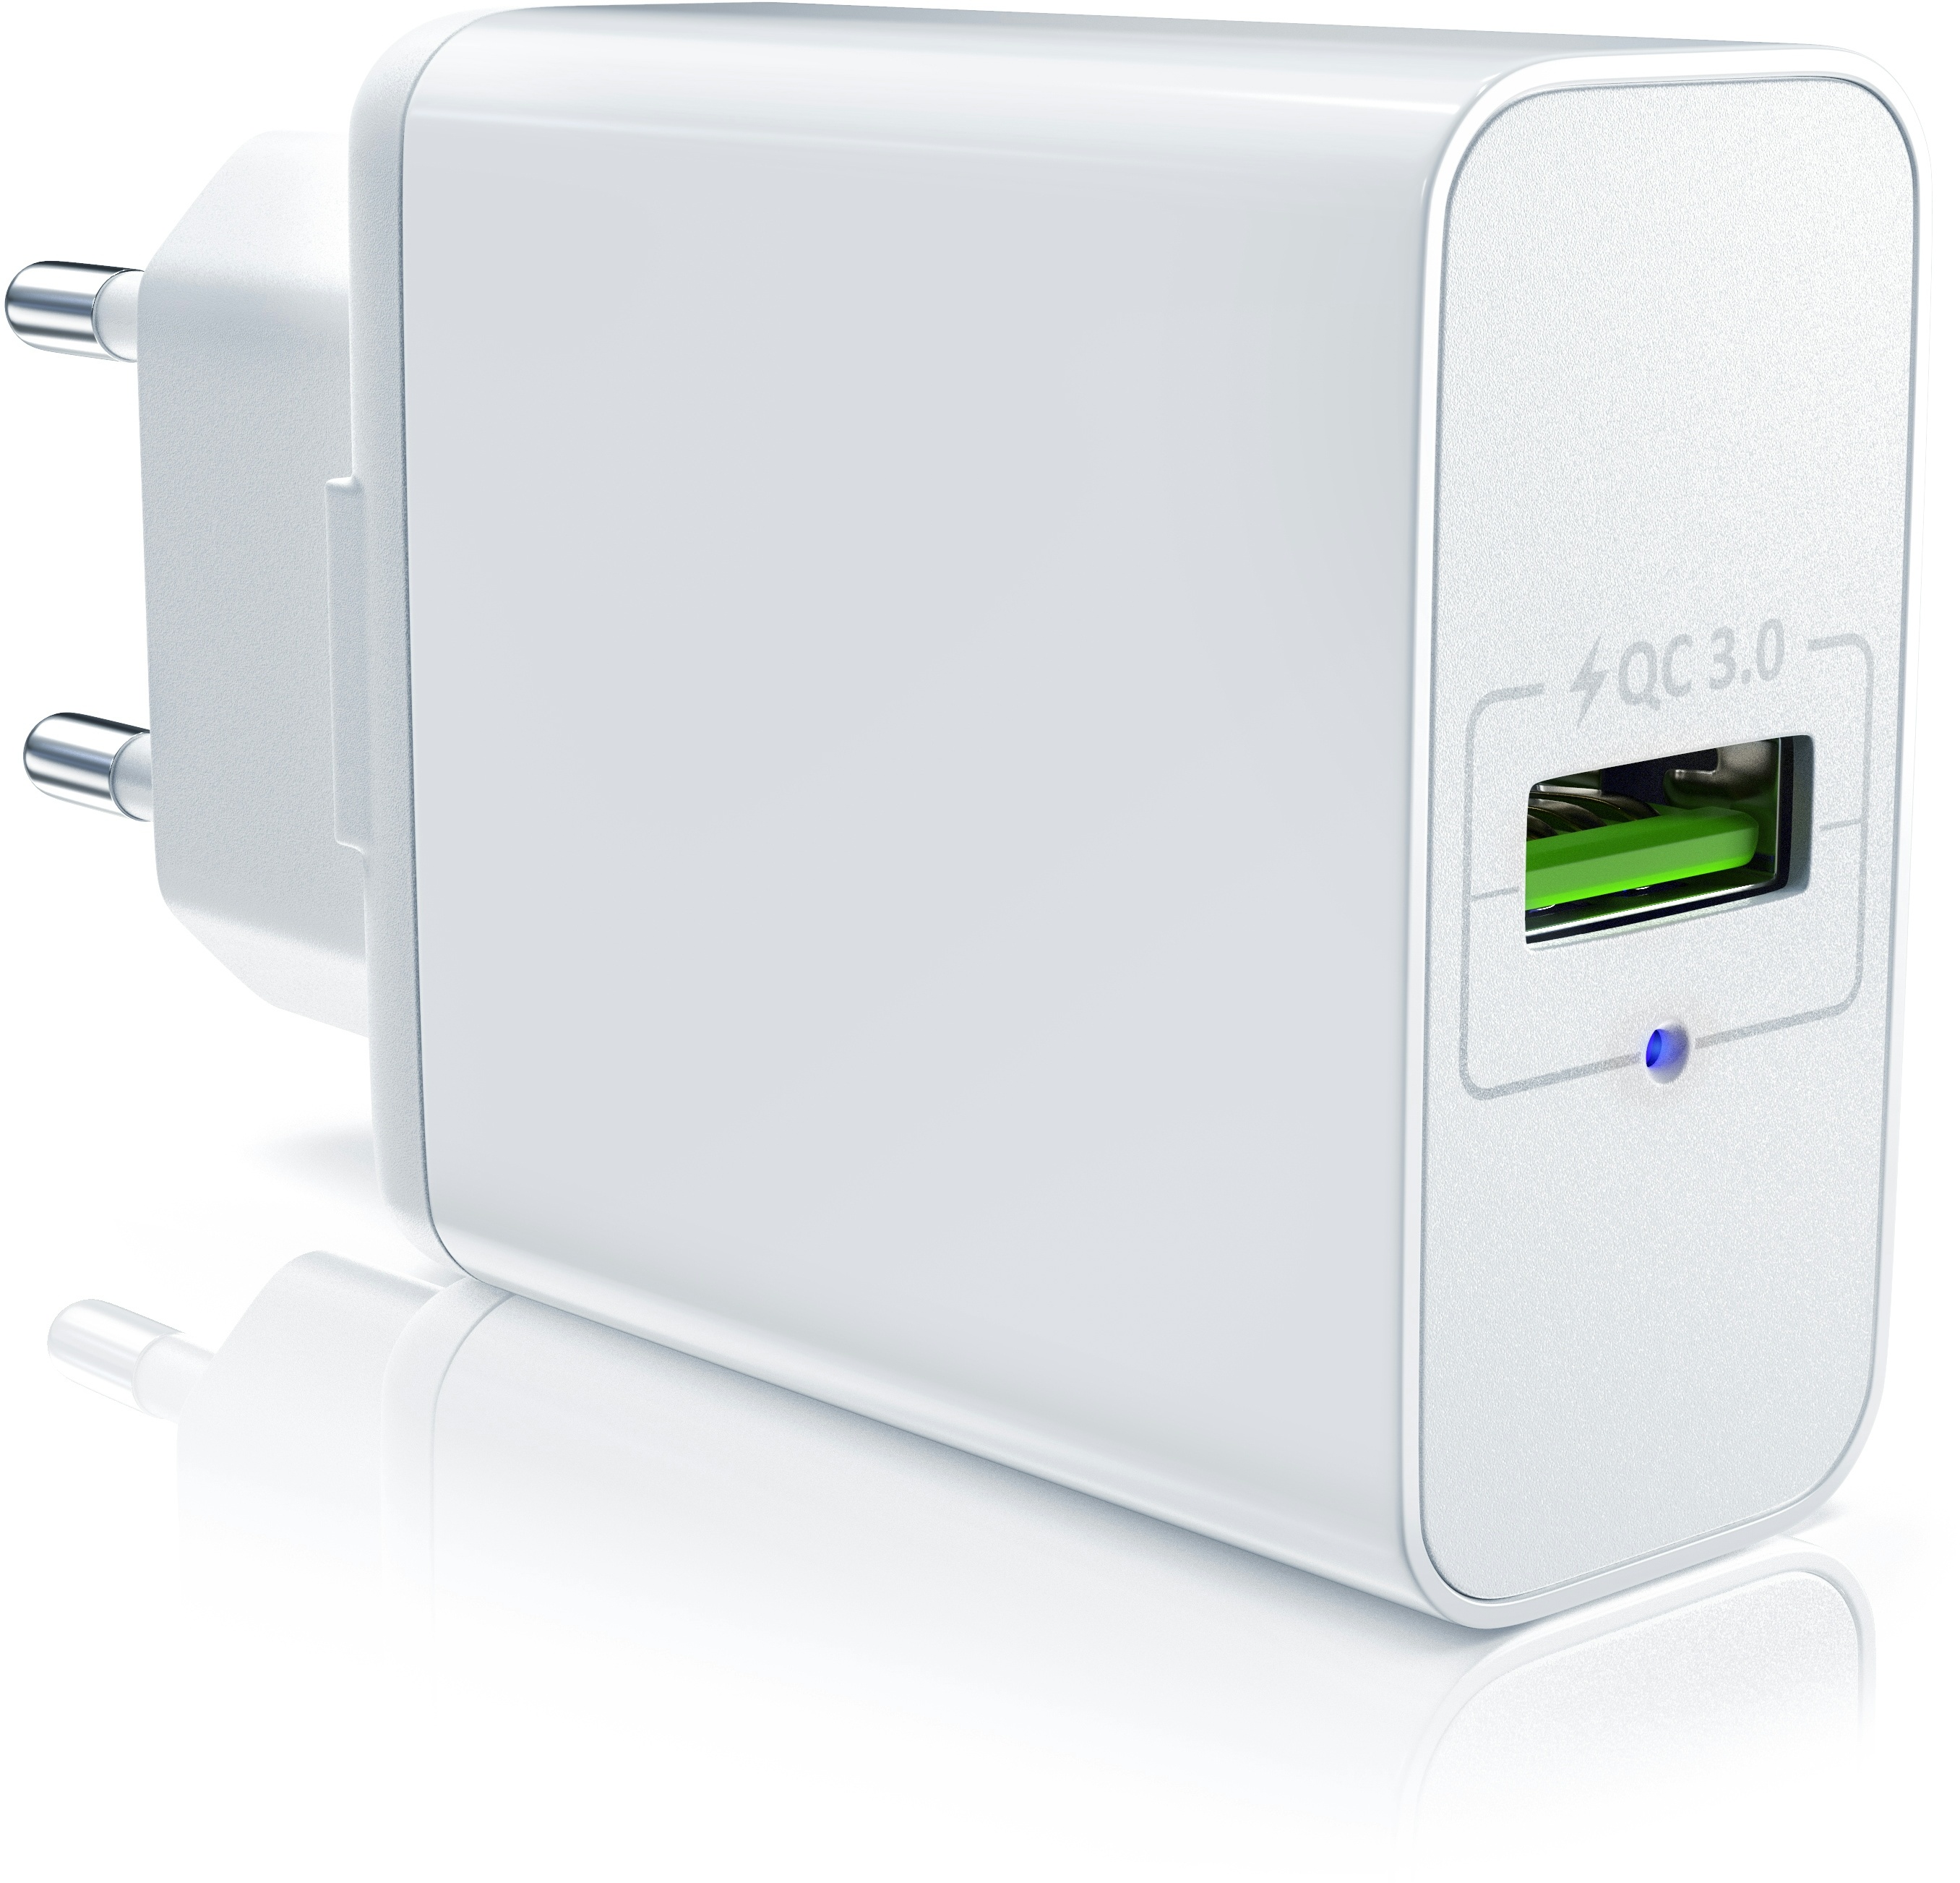 Aplic USB Ladegerät mit Schnellladefunktion - Netzteil mit Quick Charge 3.0 - Smart Charge Solid Charge Laden - für Handys, Smartphones, Tablets UVM.